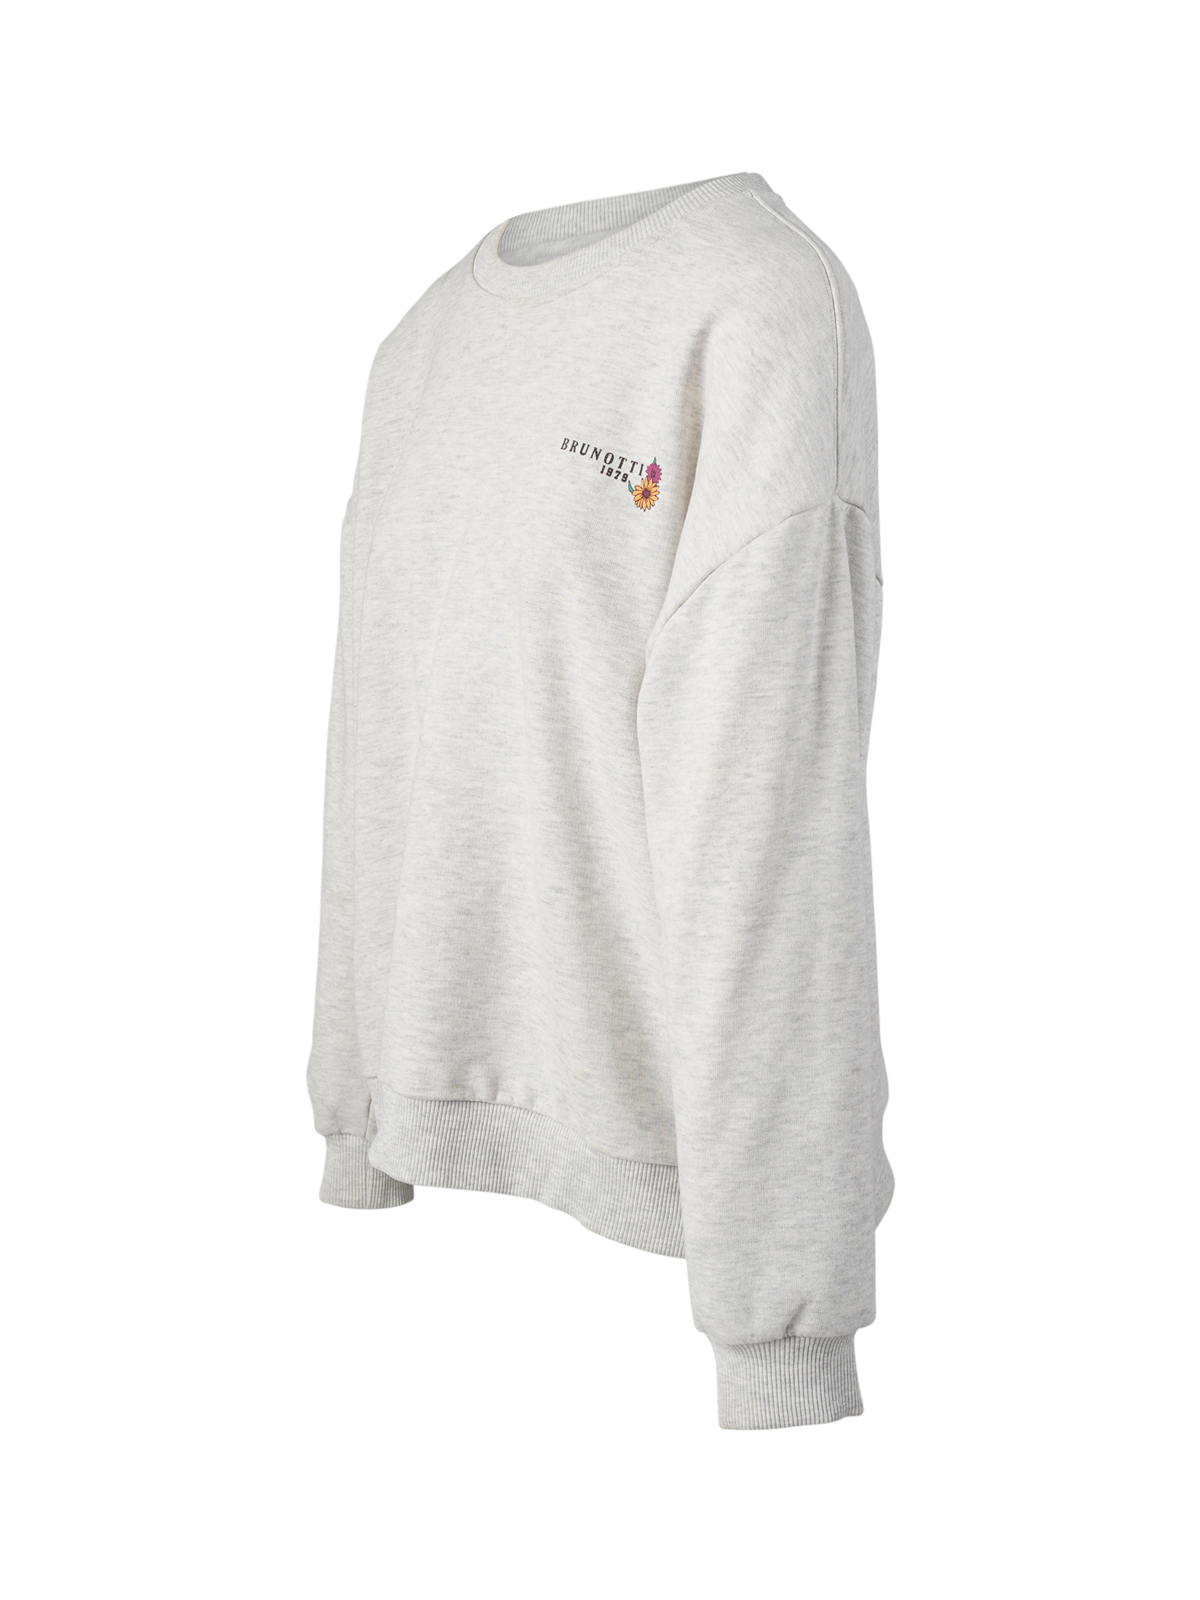 Ari Damen Sweatshirt | Weiß Melange